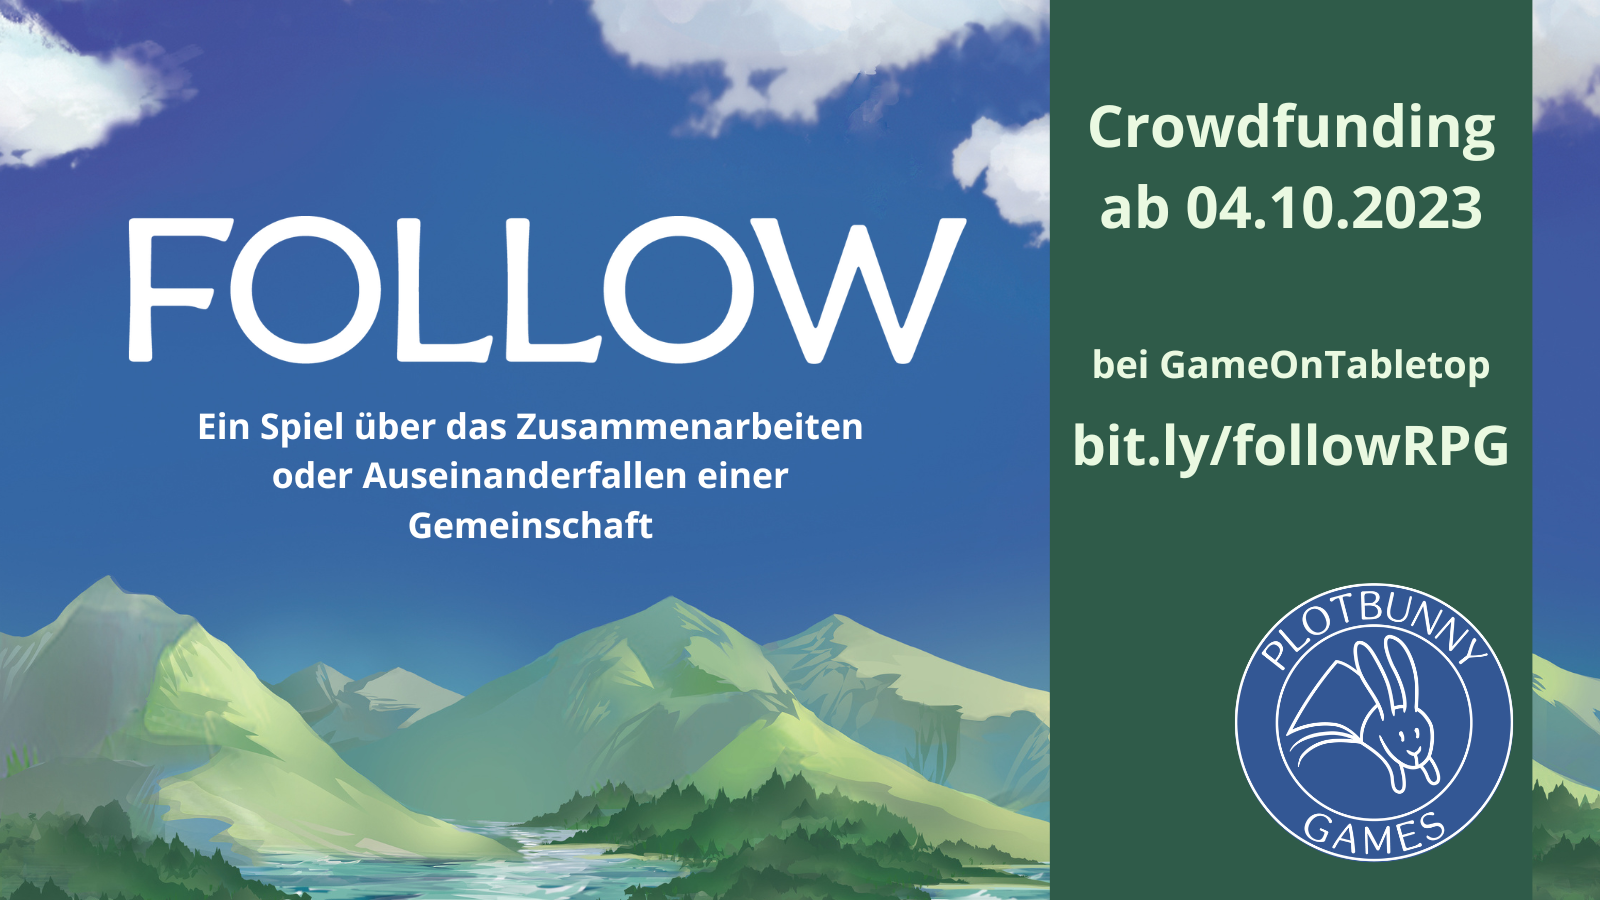 Follow - ein Spiel über das Zusammenarbeiten oder Auseinanderfallen einer Gemeinschaft. Crowdfunding ab 04.10.2023 bei GameOnTabletop, bit.ly/followRPG. Im Hintergrund blauer Himmel mit weißen Wölkchen und grün-graue Berge am unteren Bildrand. Man sieht außerdem das Plotbunny Games Logo